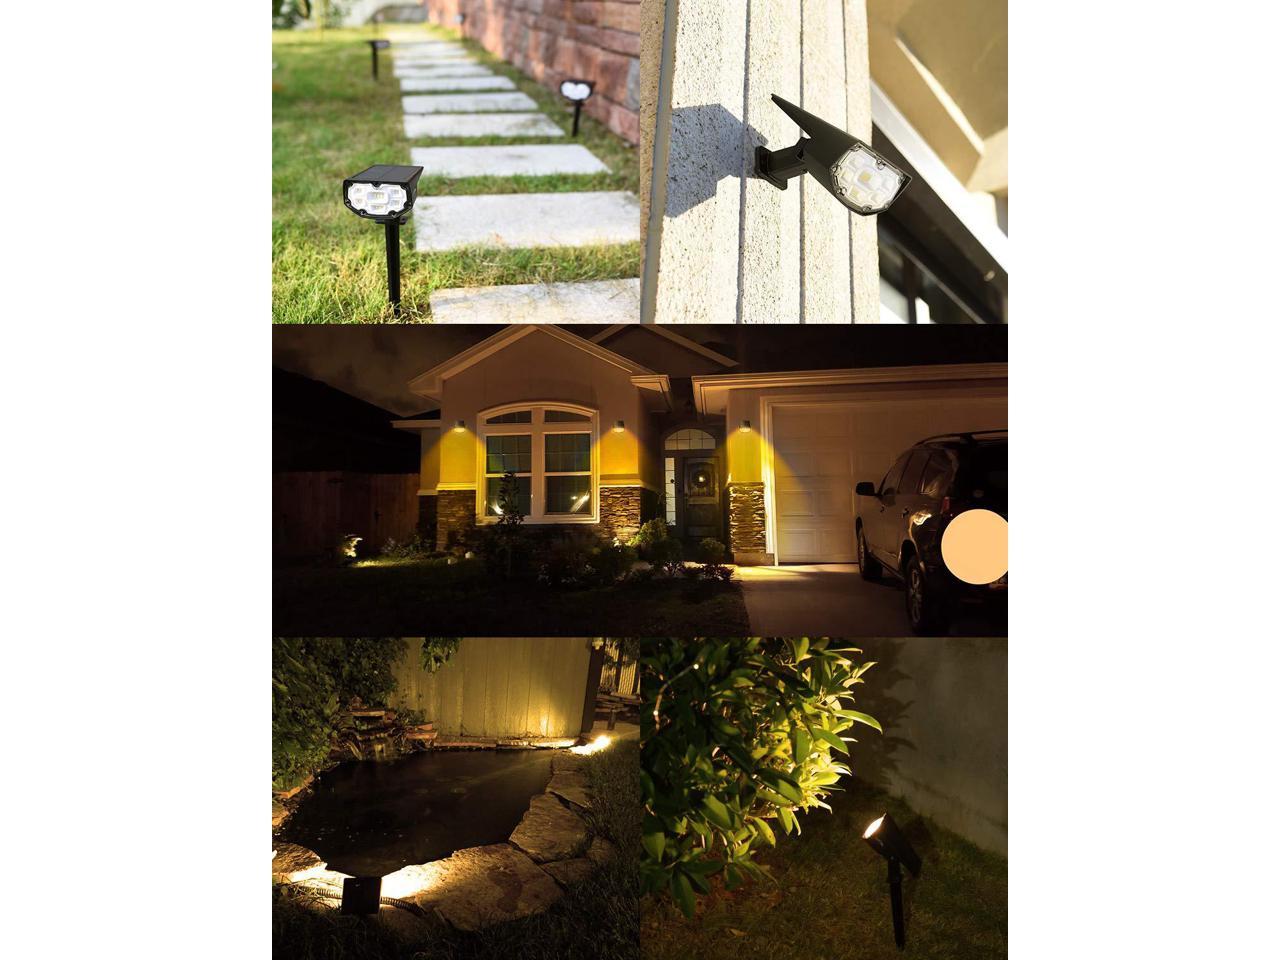 Litom 12 LED Solar Landscape Spotlights IP67 Outdoor Lights for Yard Garden Lamp